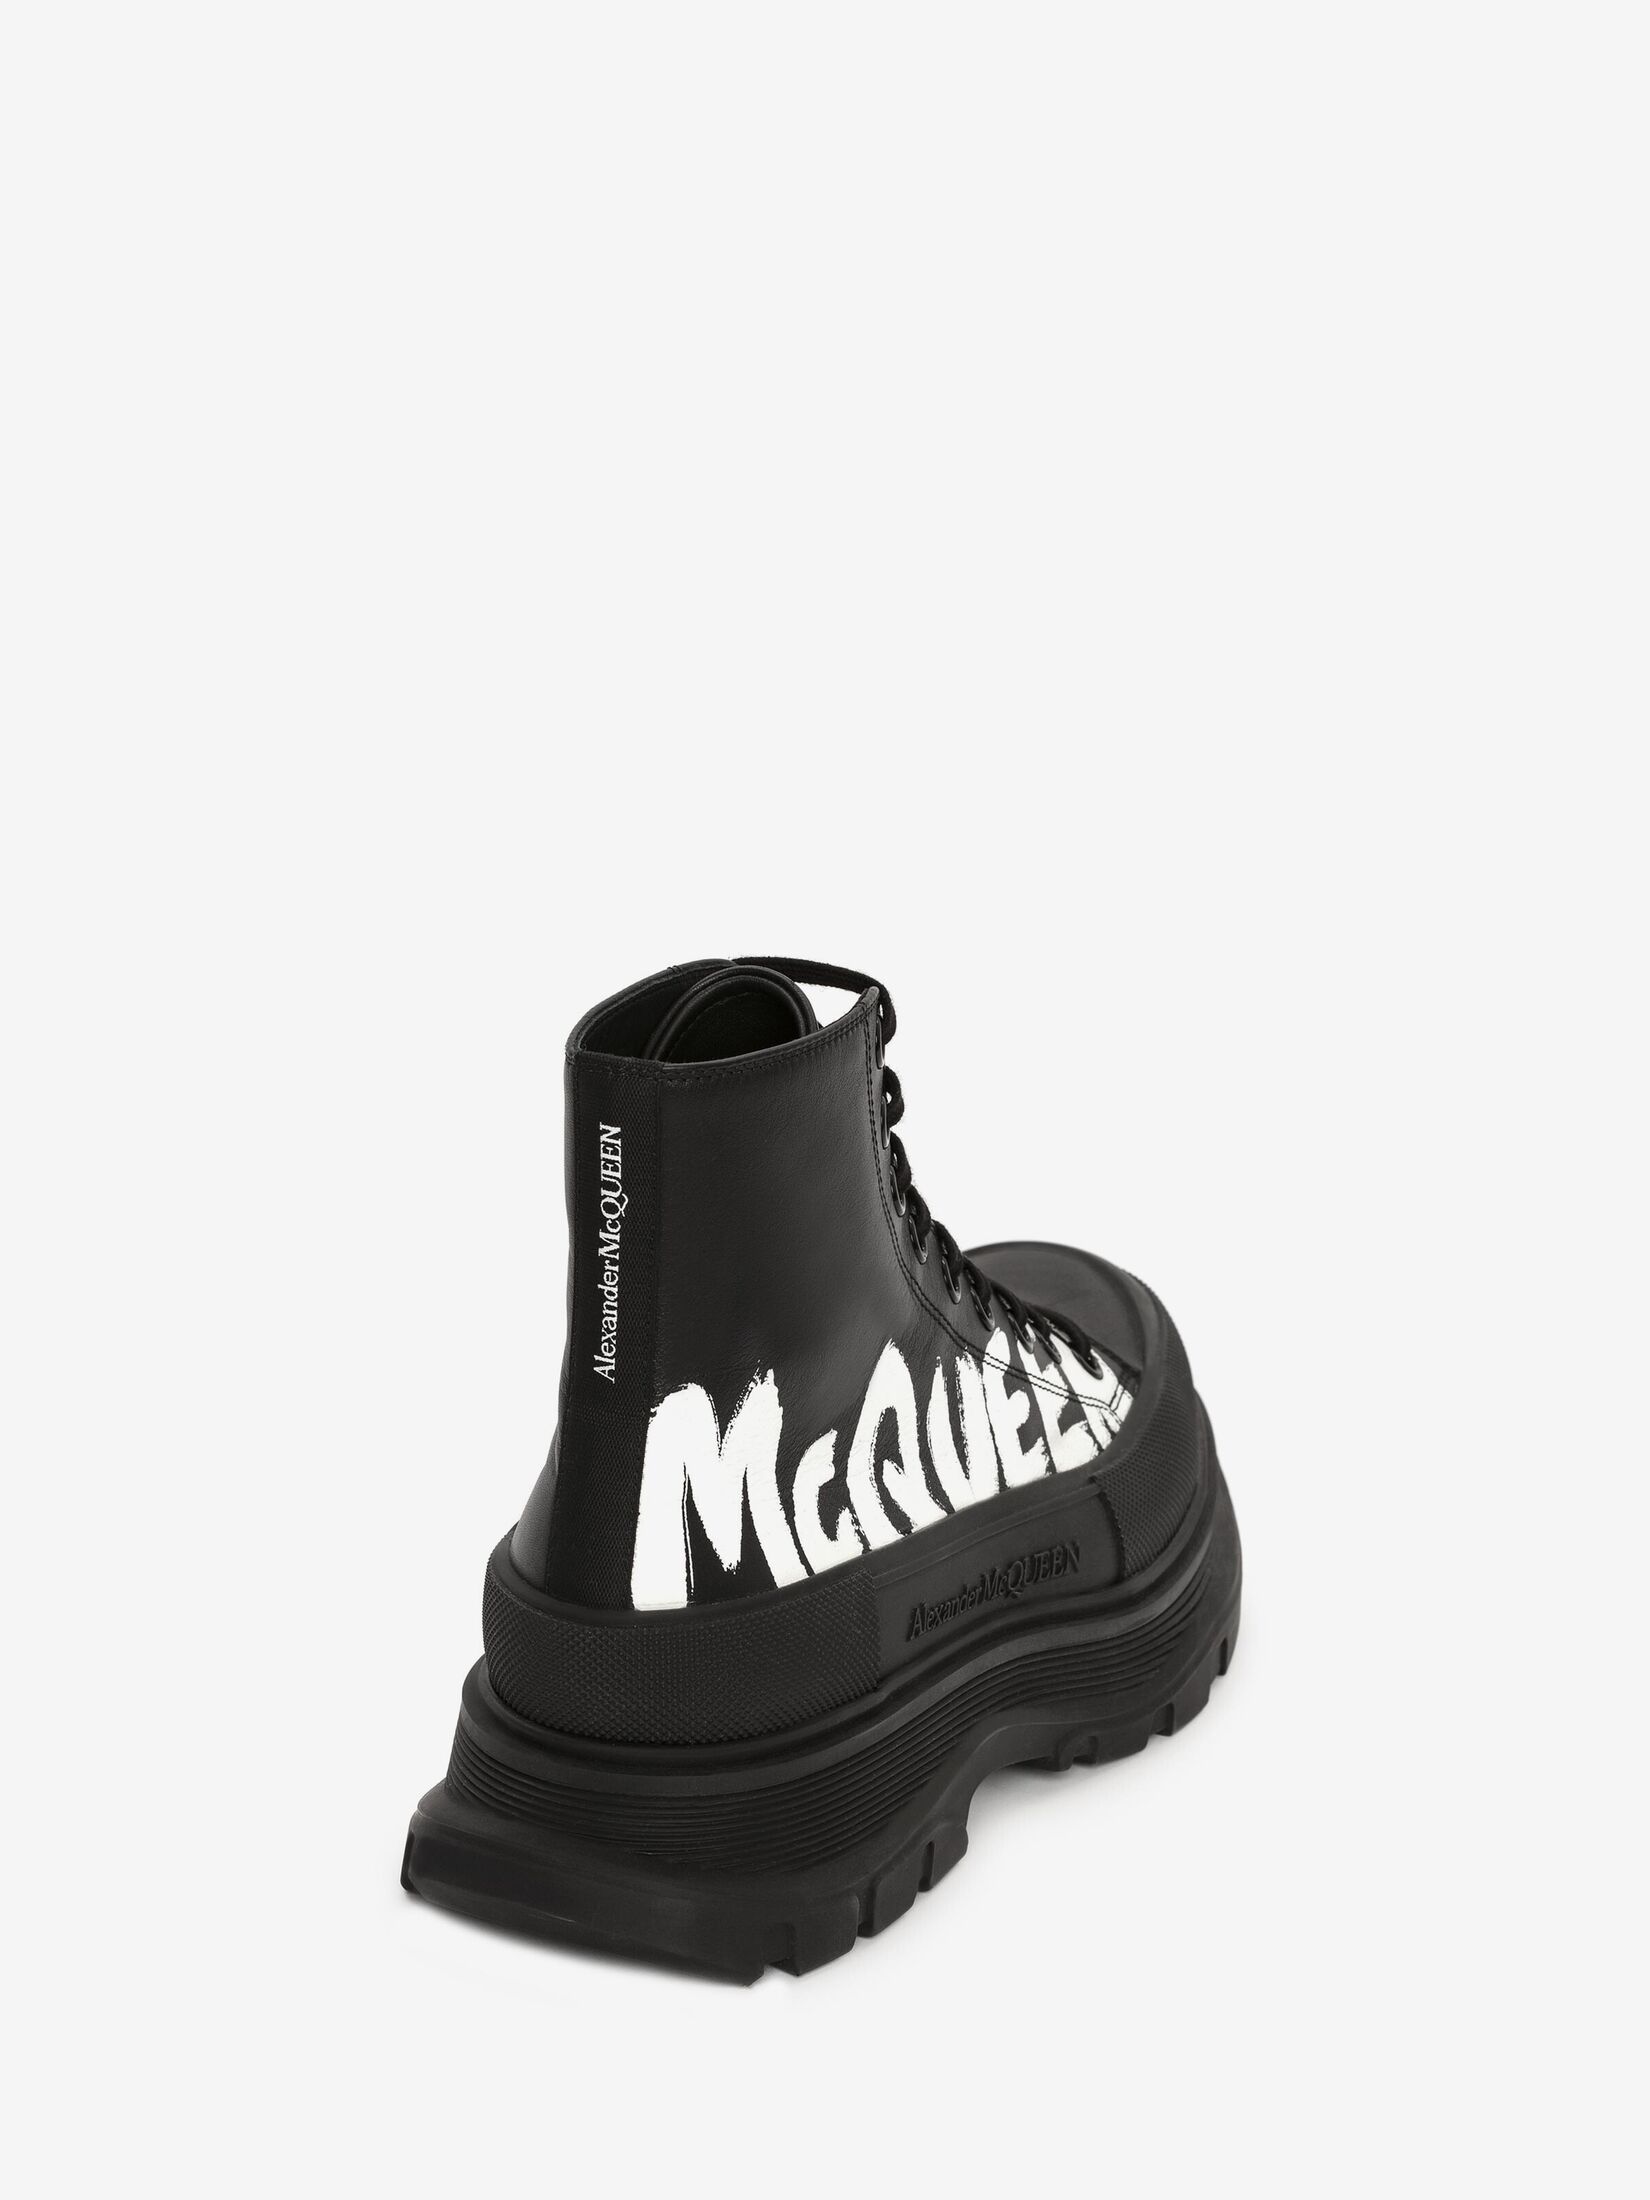 Alexander McQueen Shiny Toecap Tread Chelsea Boot Black